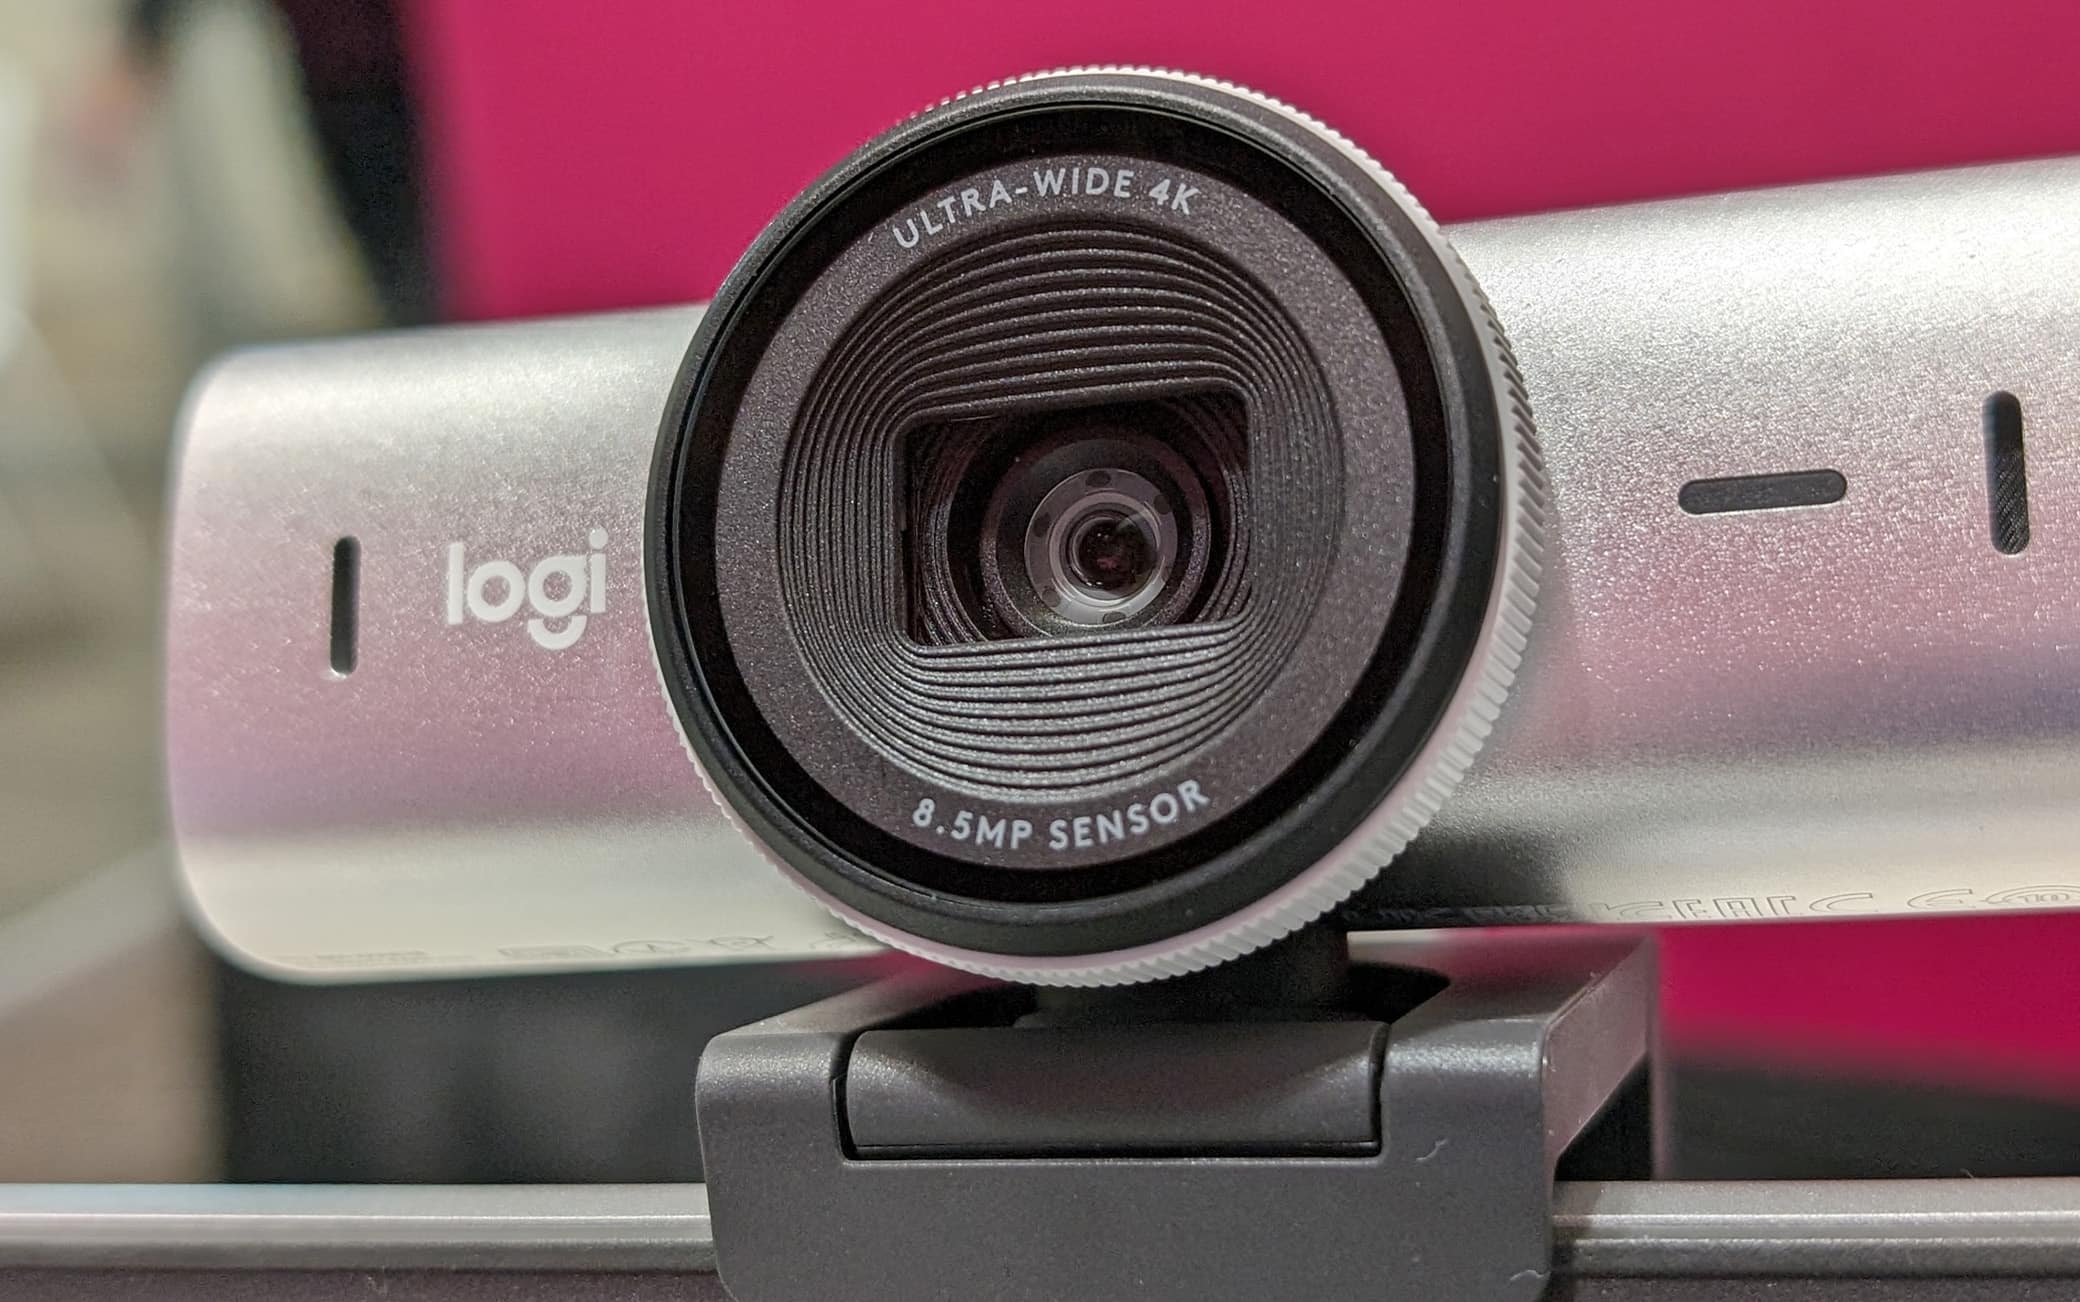 La webcam si presenta elegante e appare, da subito., un prodotto premium